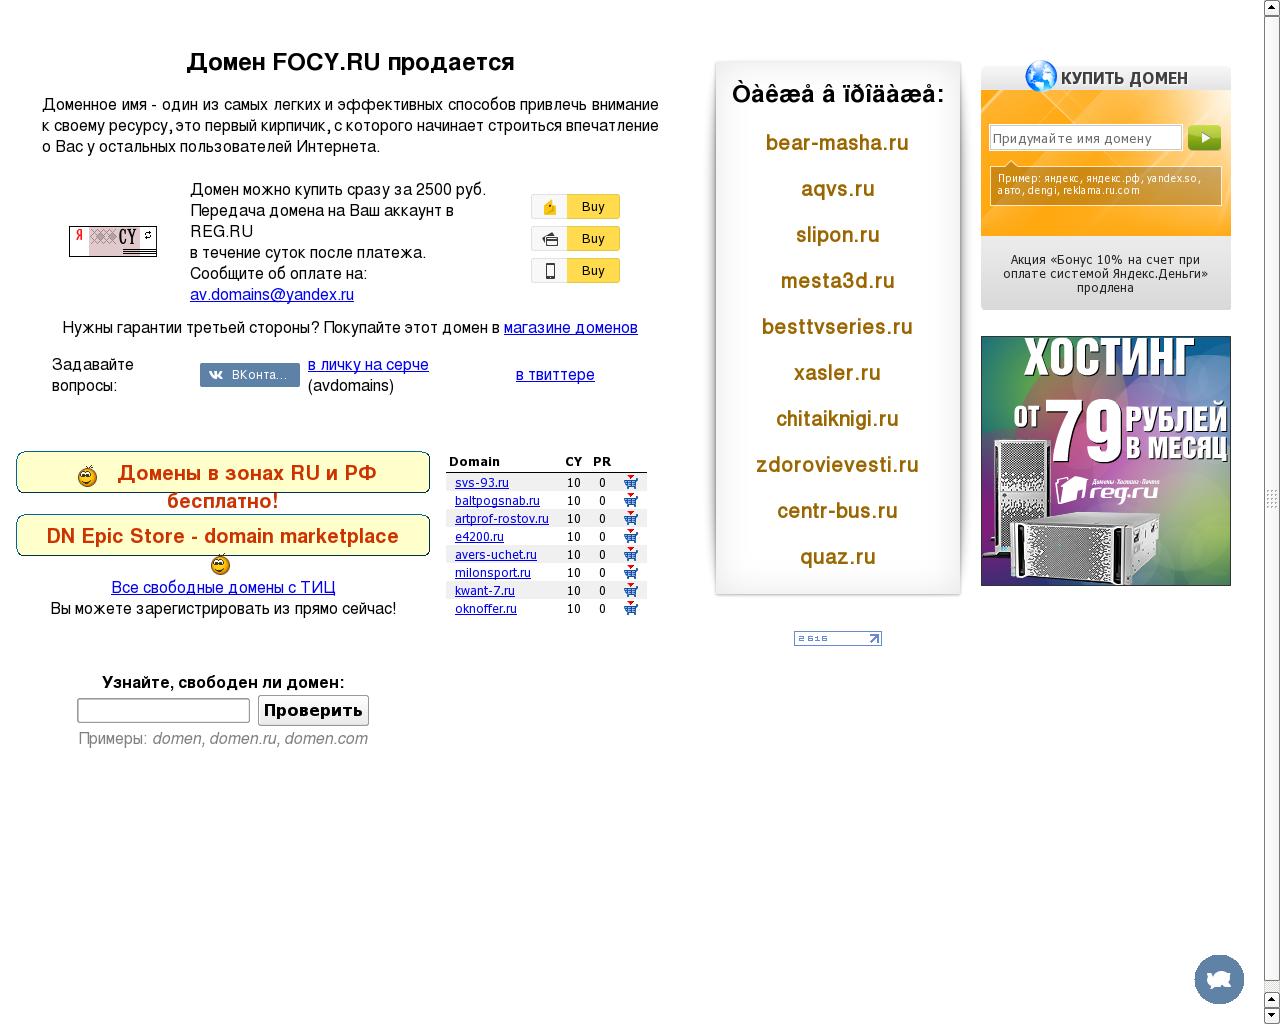 Изображение сайта focy.ru в разрешении 1280x1024